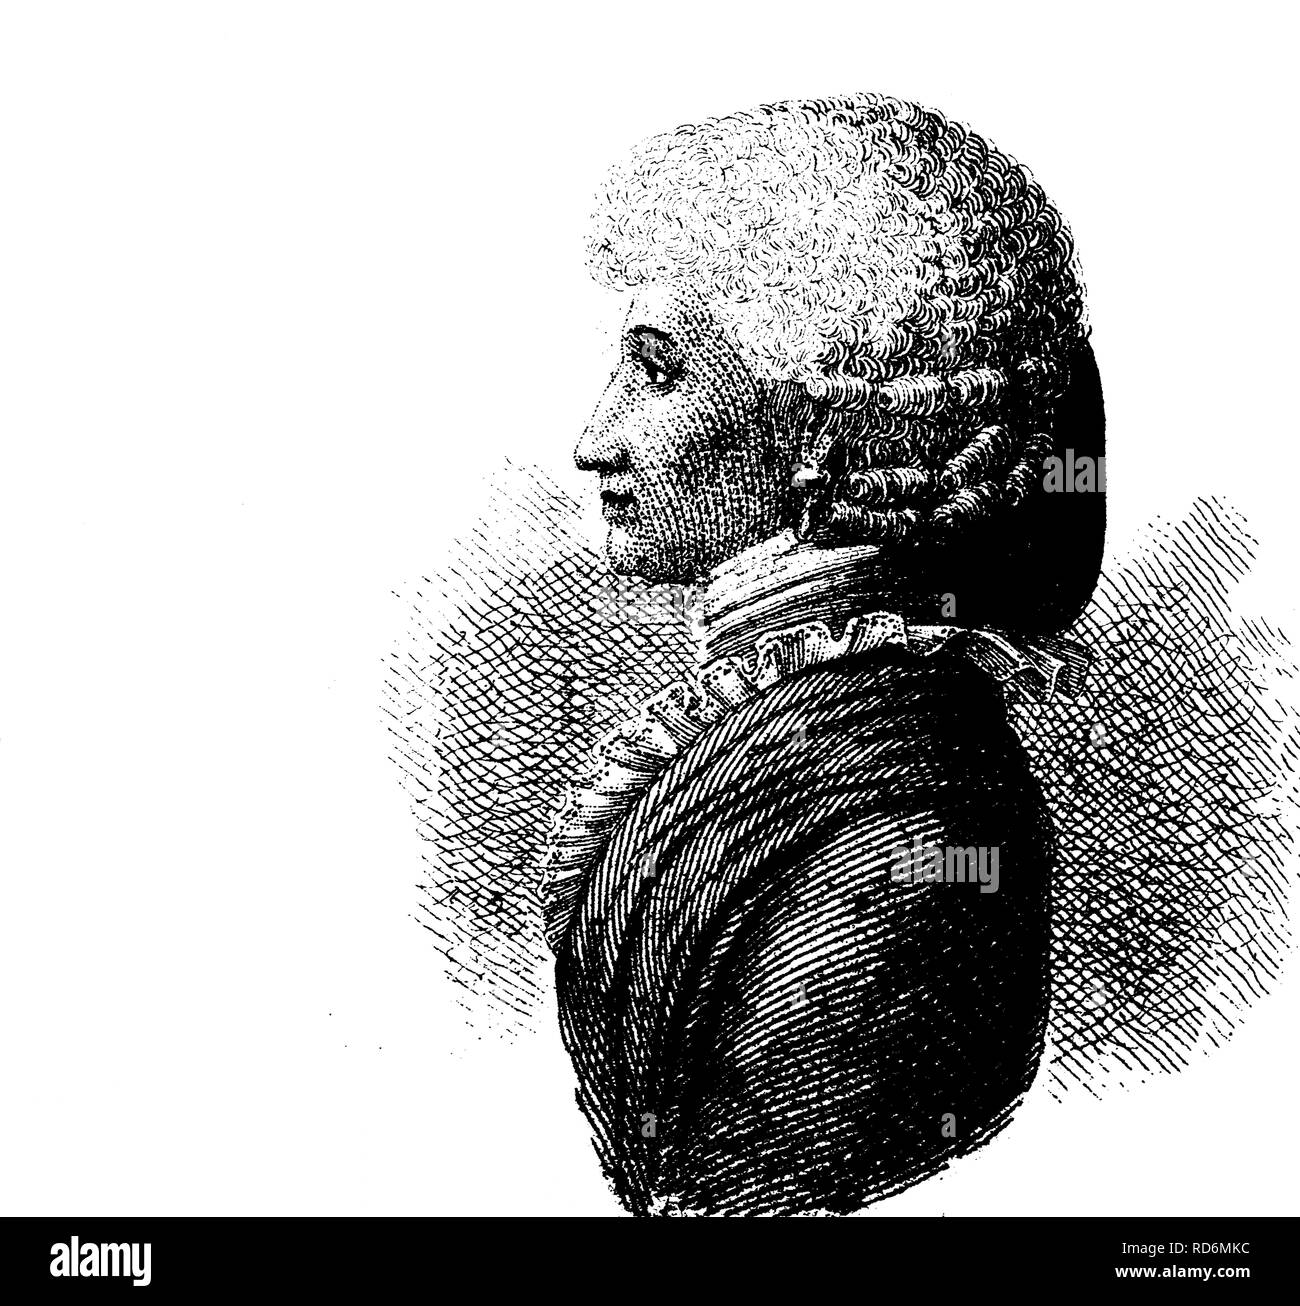 Mode de cheveux : les cheveux des femmes en 1800, style illustration historique Banque D'Images